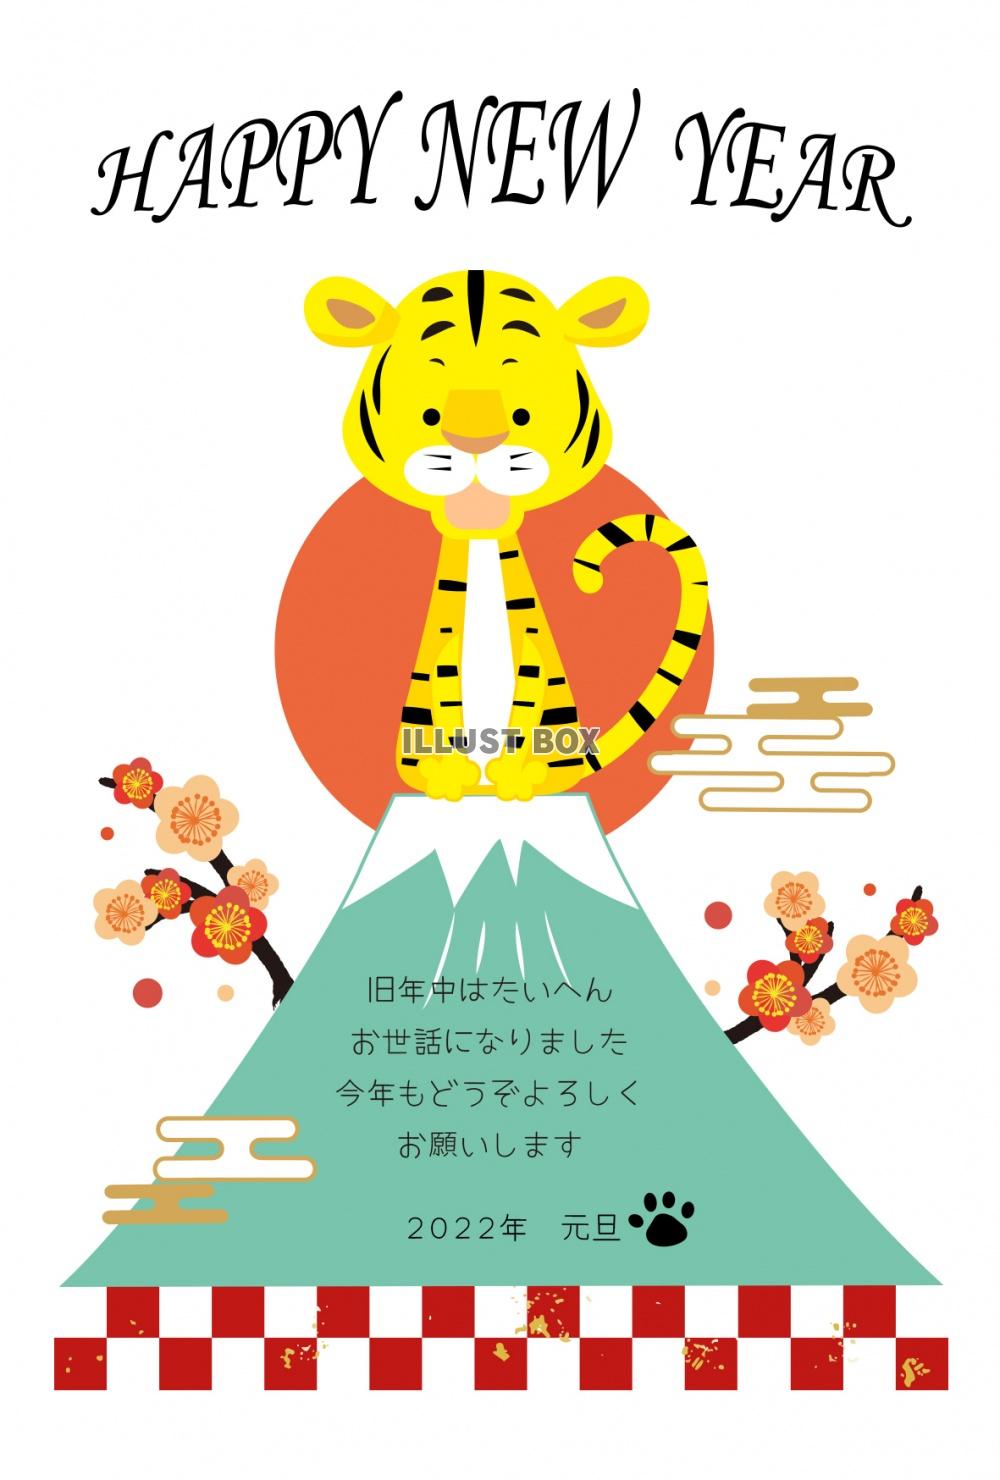 日本のシンボル、富士山の頂上で吠えるトラの年賀状2022年(...